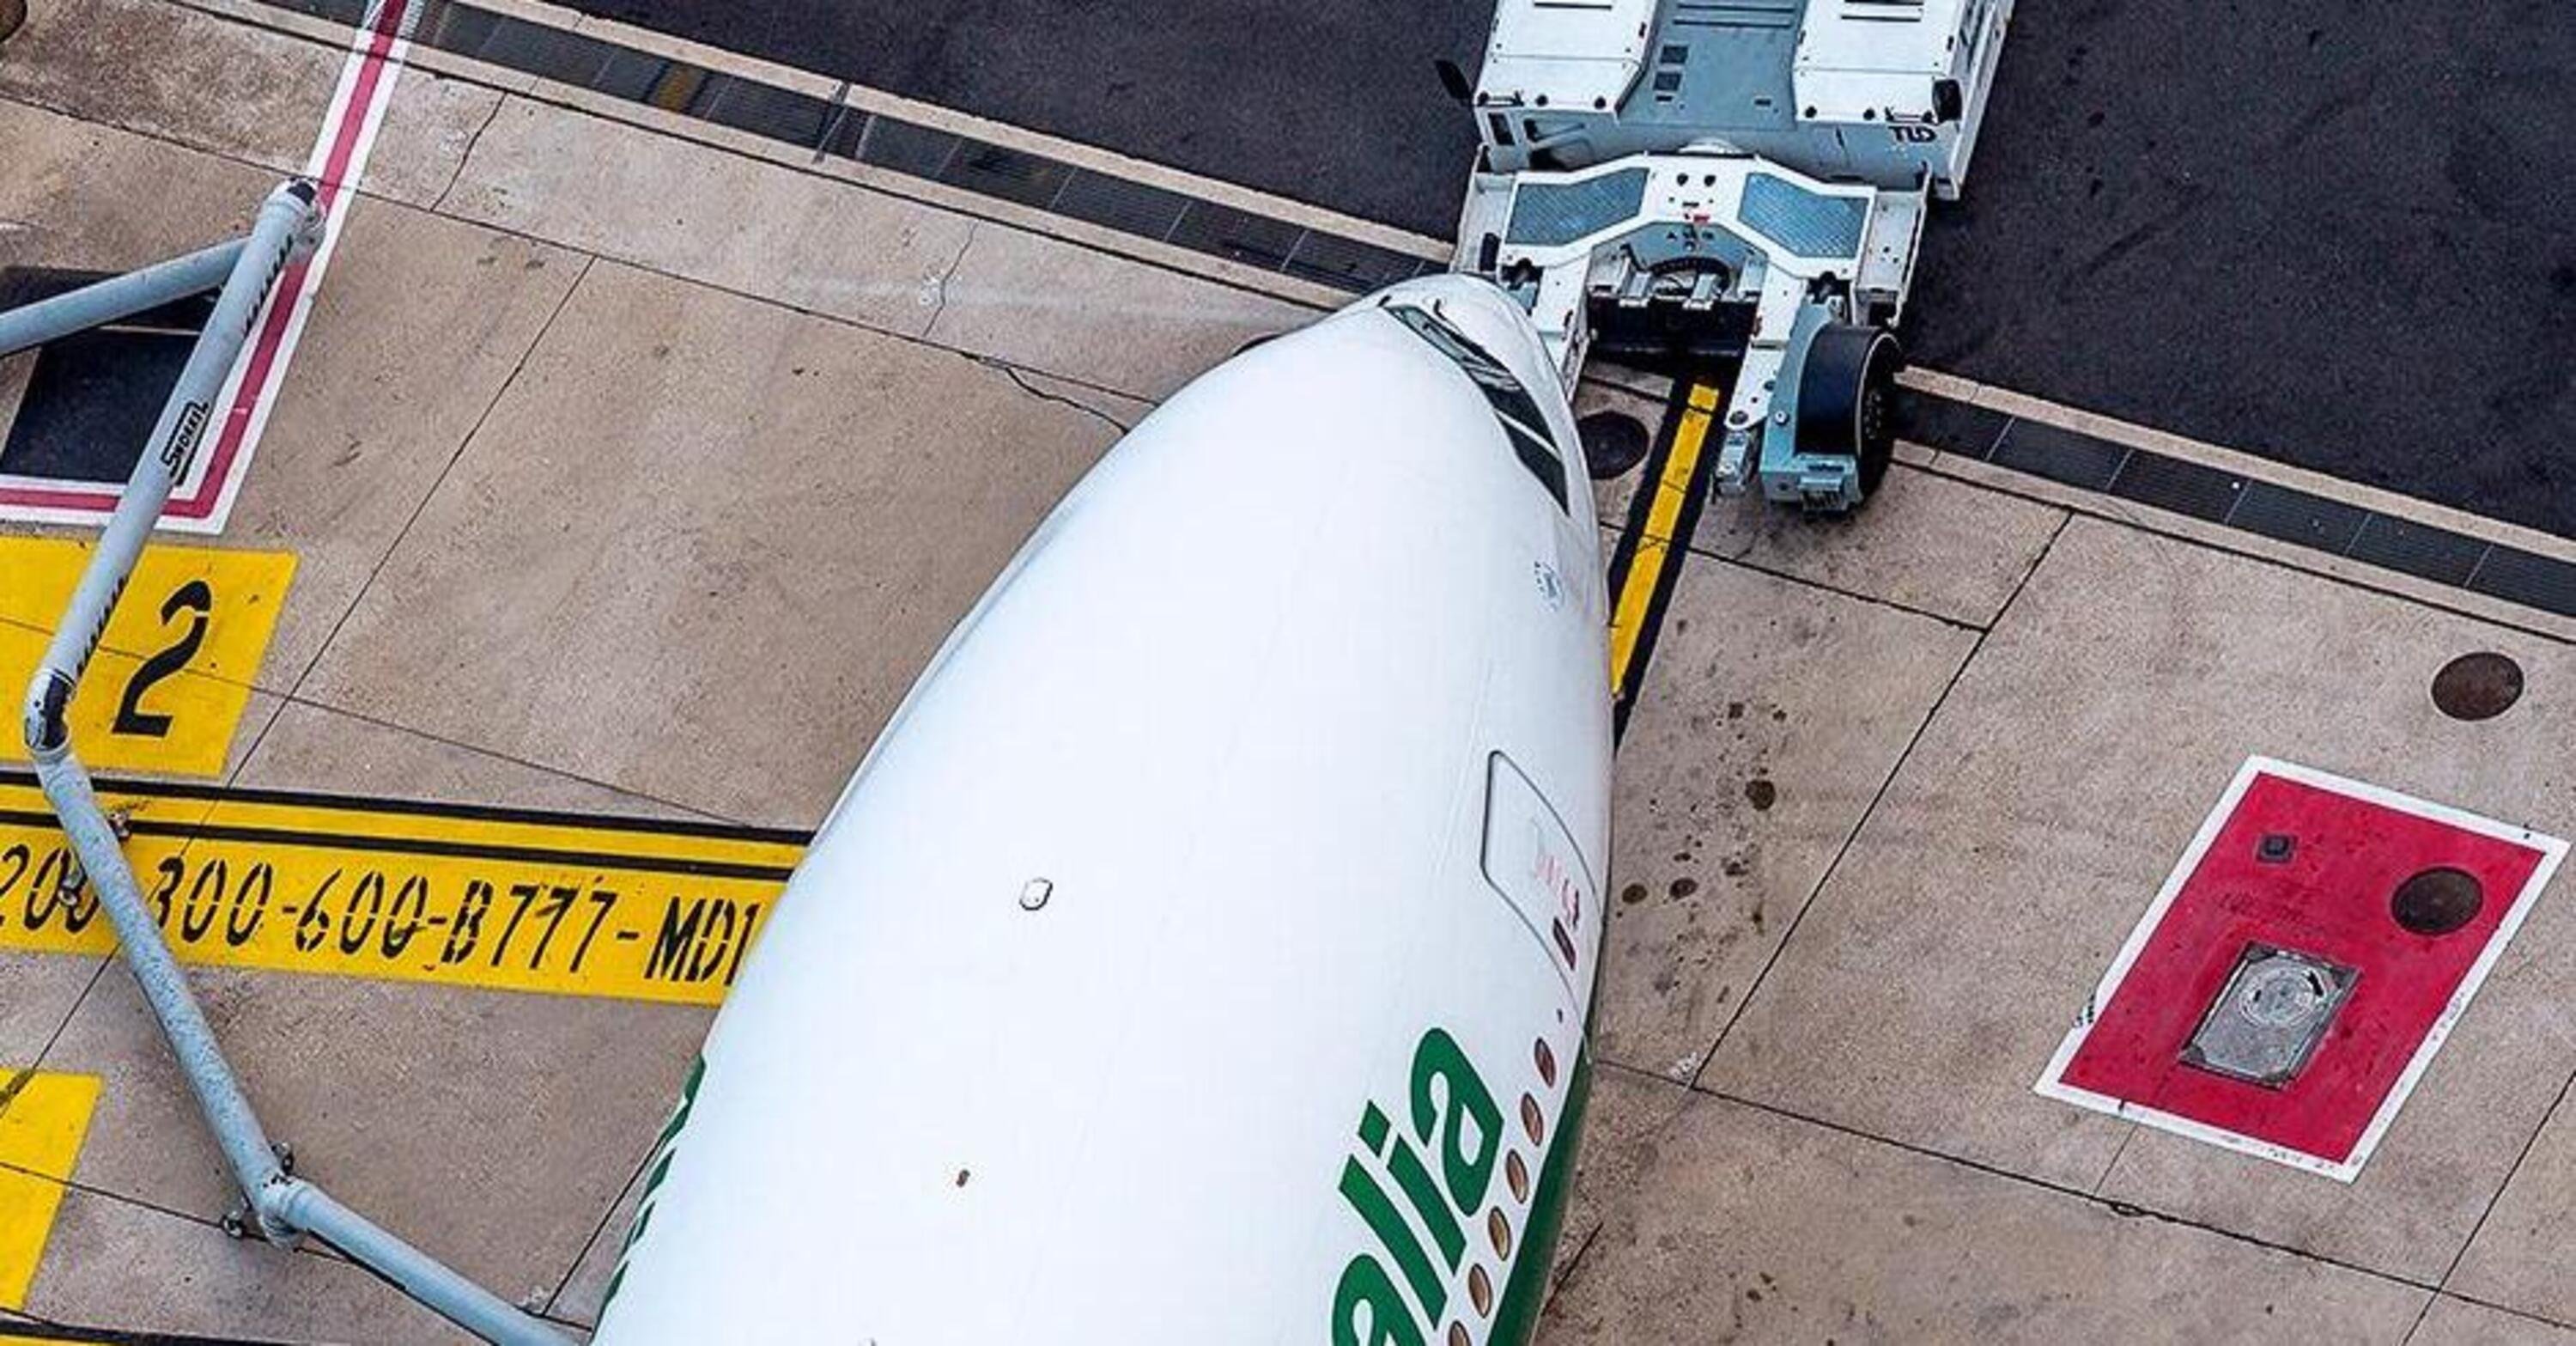 La compagnia aerea Alitalia vola ancora: target nazionalizzazione grazie a 600 milioni